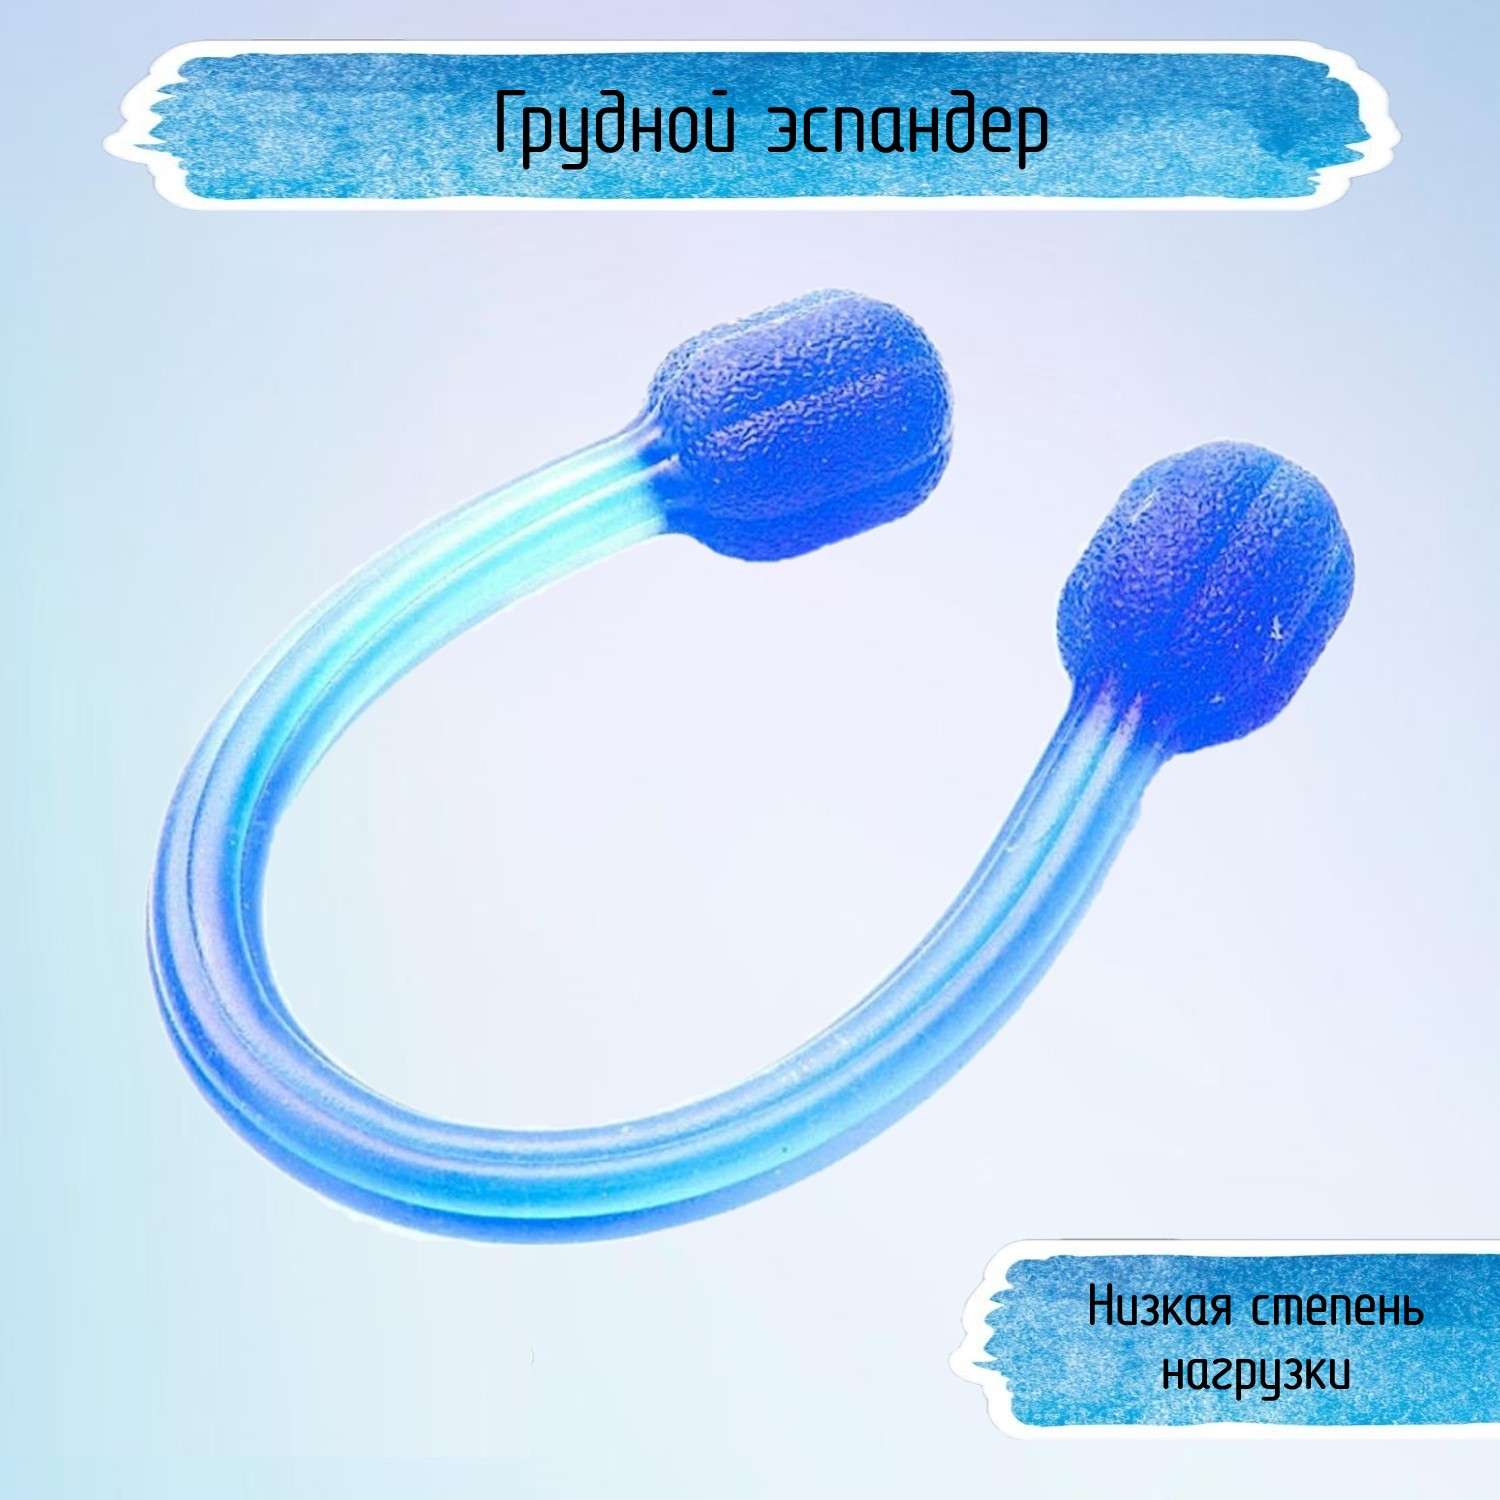 Грудной эспандер Uniglodis Цвет: синий - фото 1